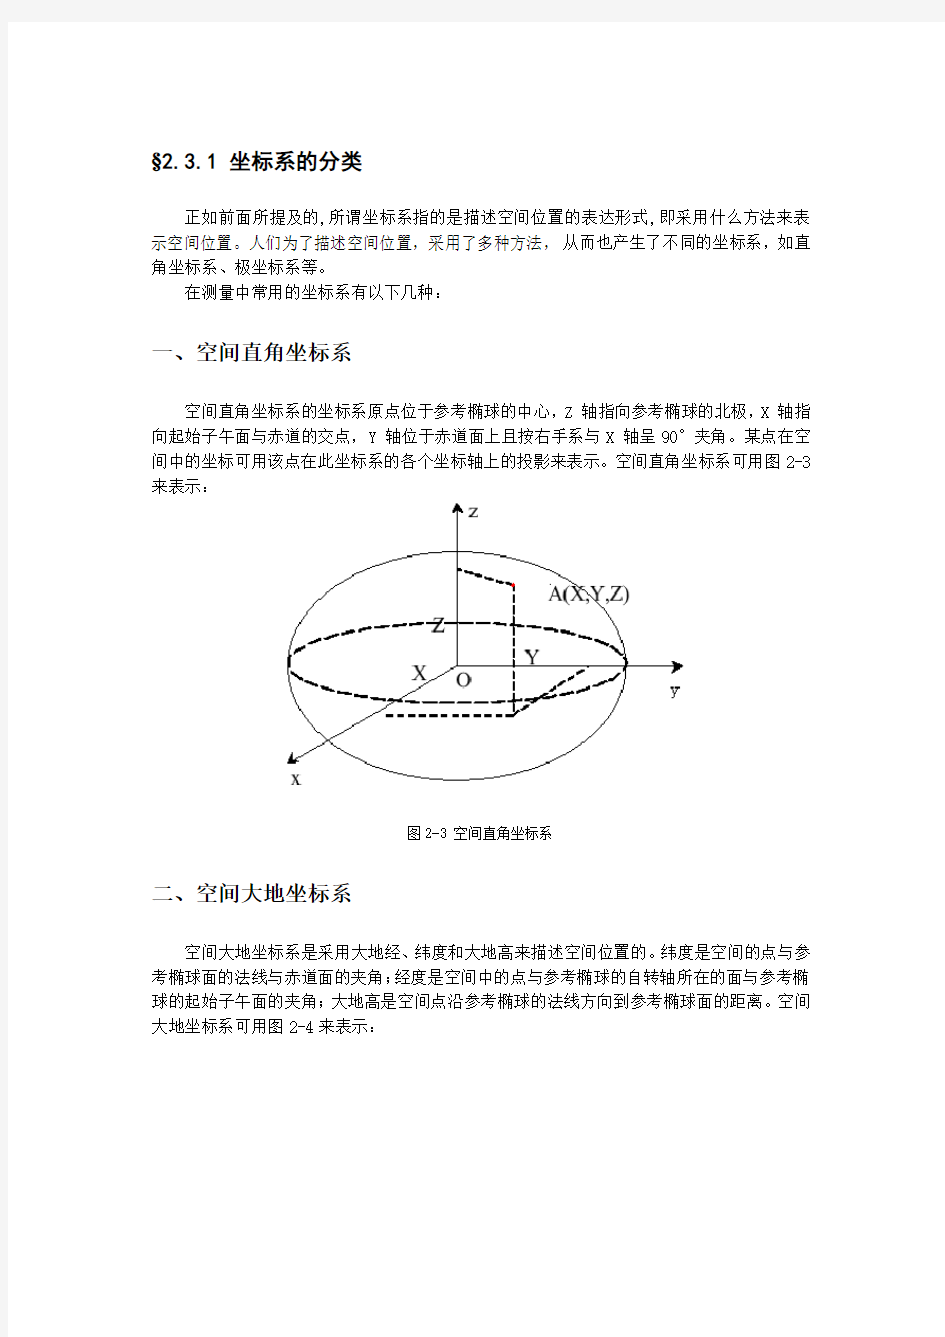 空间大地坐标系与平面直角坐标系转换公式